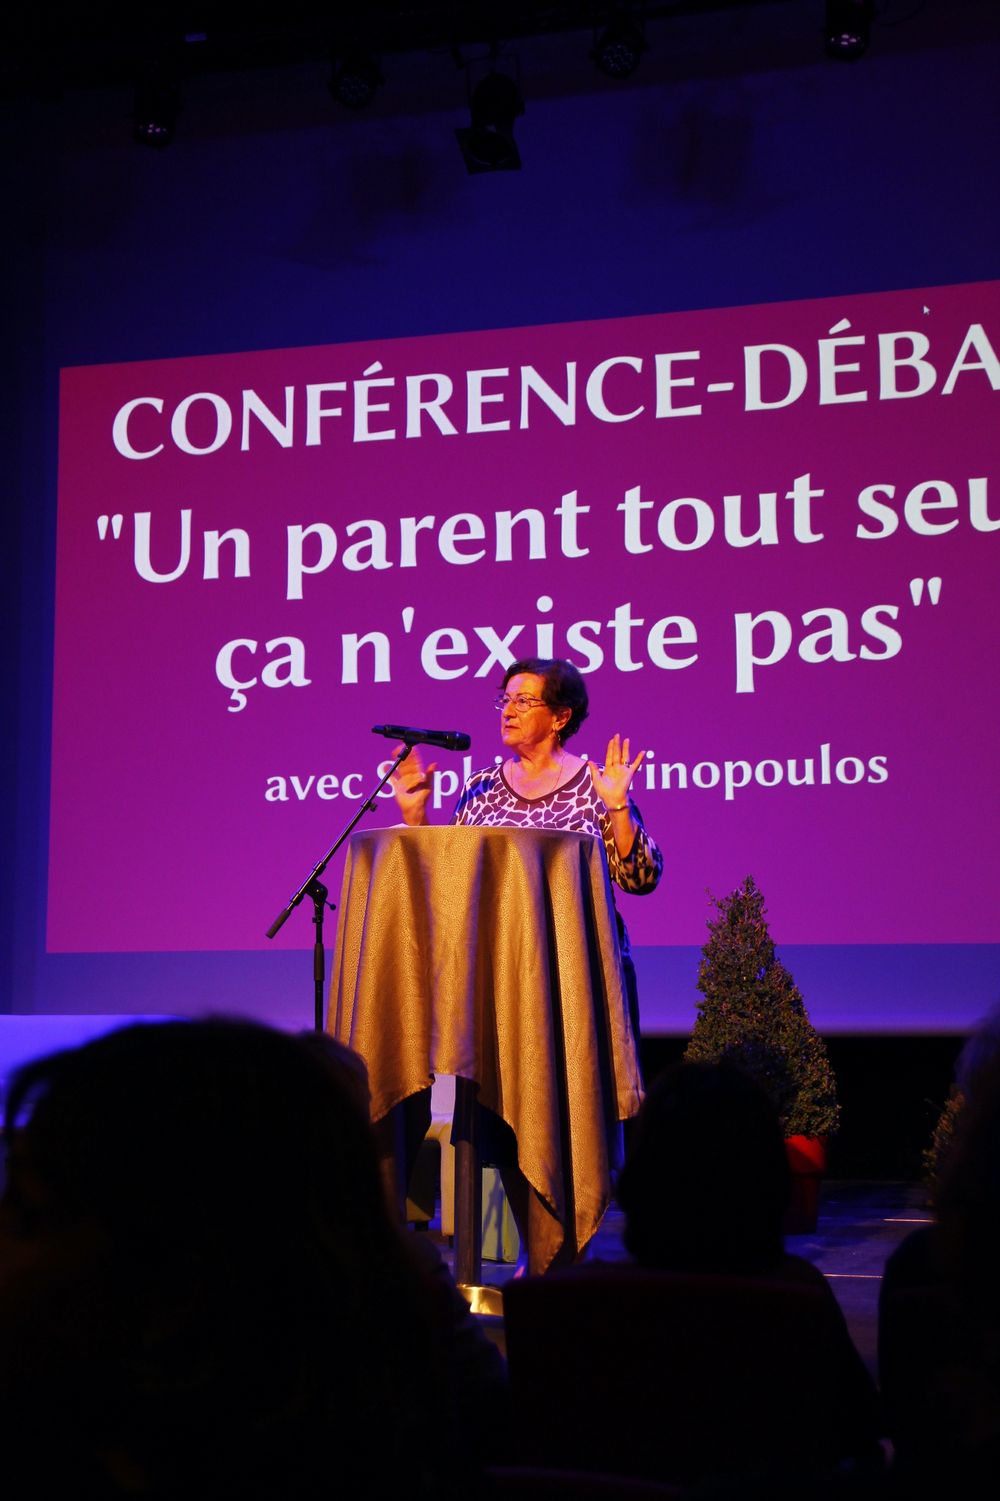 "Un parent tout seul ça n'existe pas" : galerie d'images de la conférence-débat avec Sophie Marinopoulos